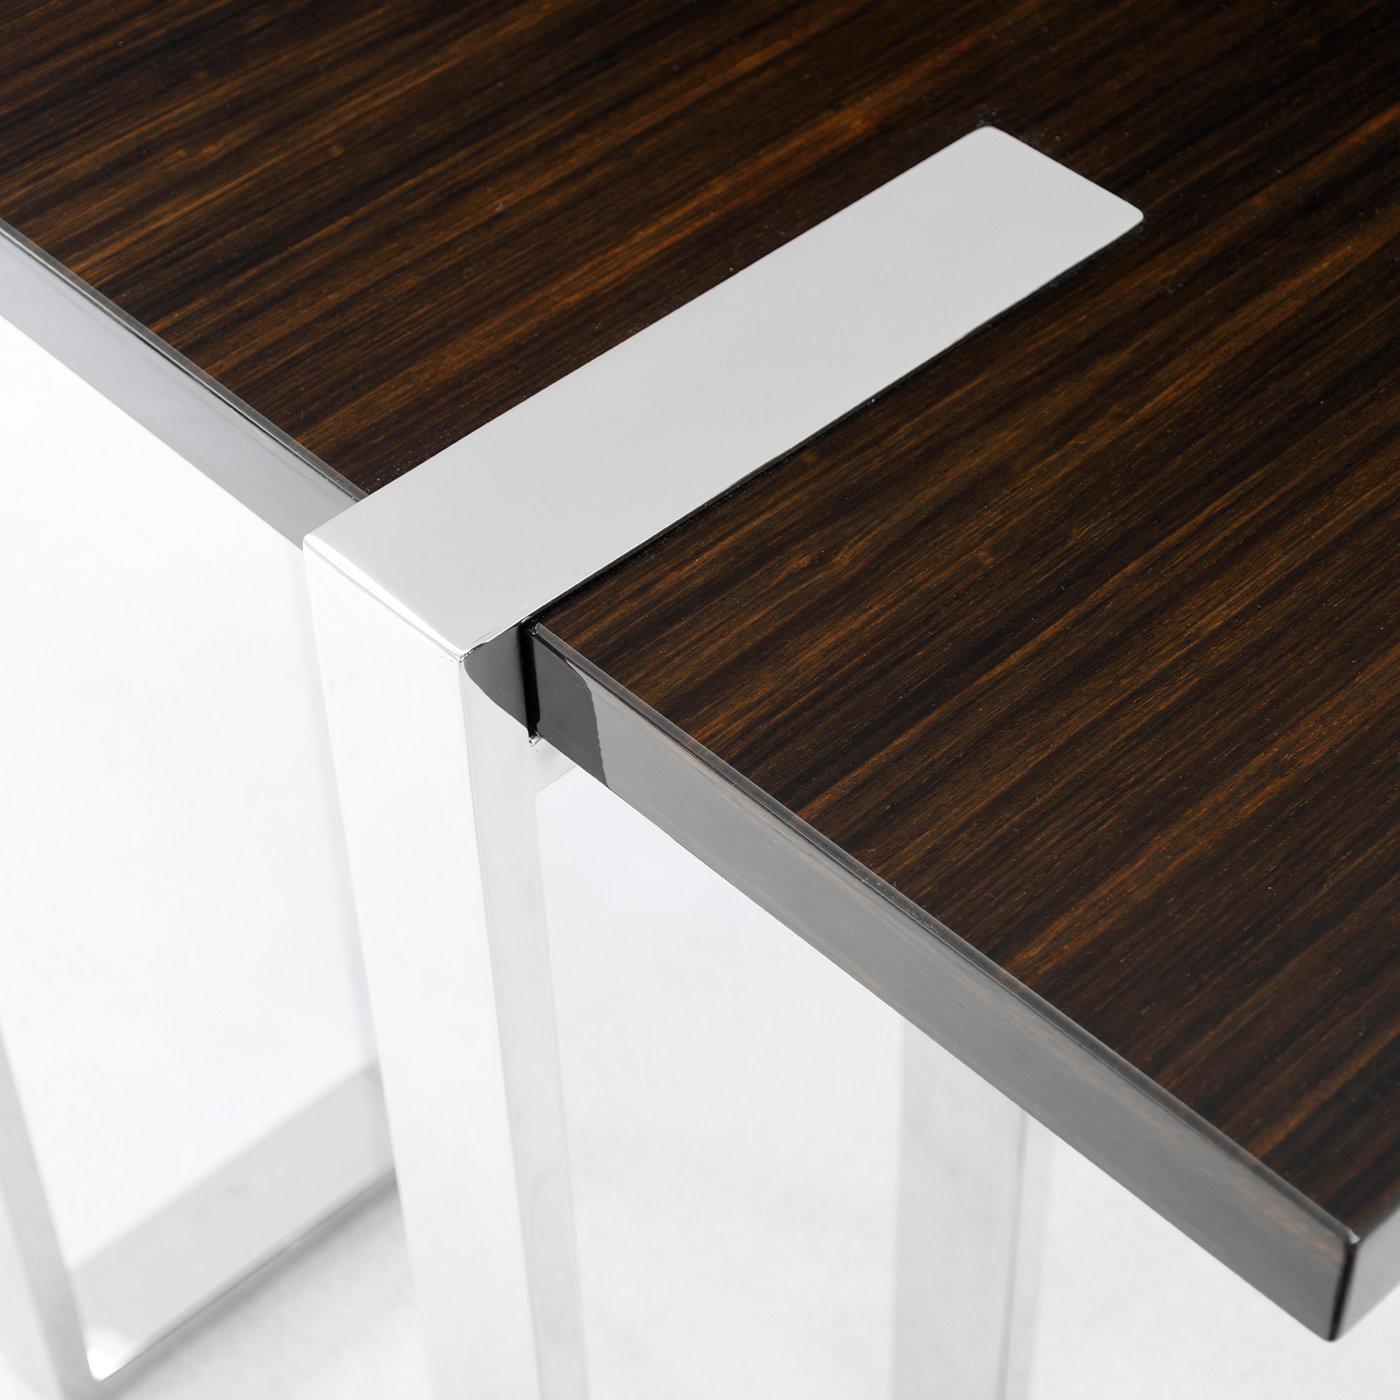 Mit seiner ästhetischen Leichtigkeit und seinem attraktiven, minimalistischen Design sorgt dieser Schreibtisch für einen schicken Arbeitsplatz zu Hause und im Büro. Die schlanken Beine bieten nicht nur Halt, sondern auch eine ansprechende Optik und